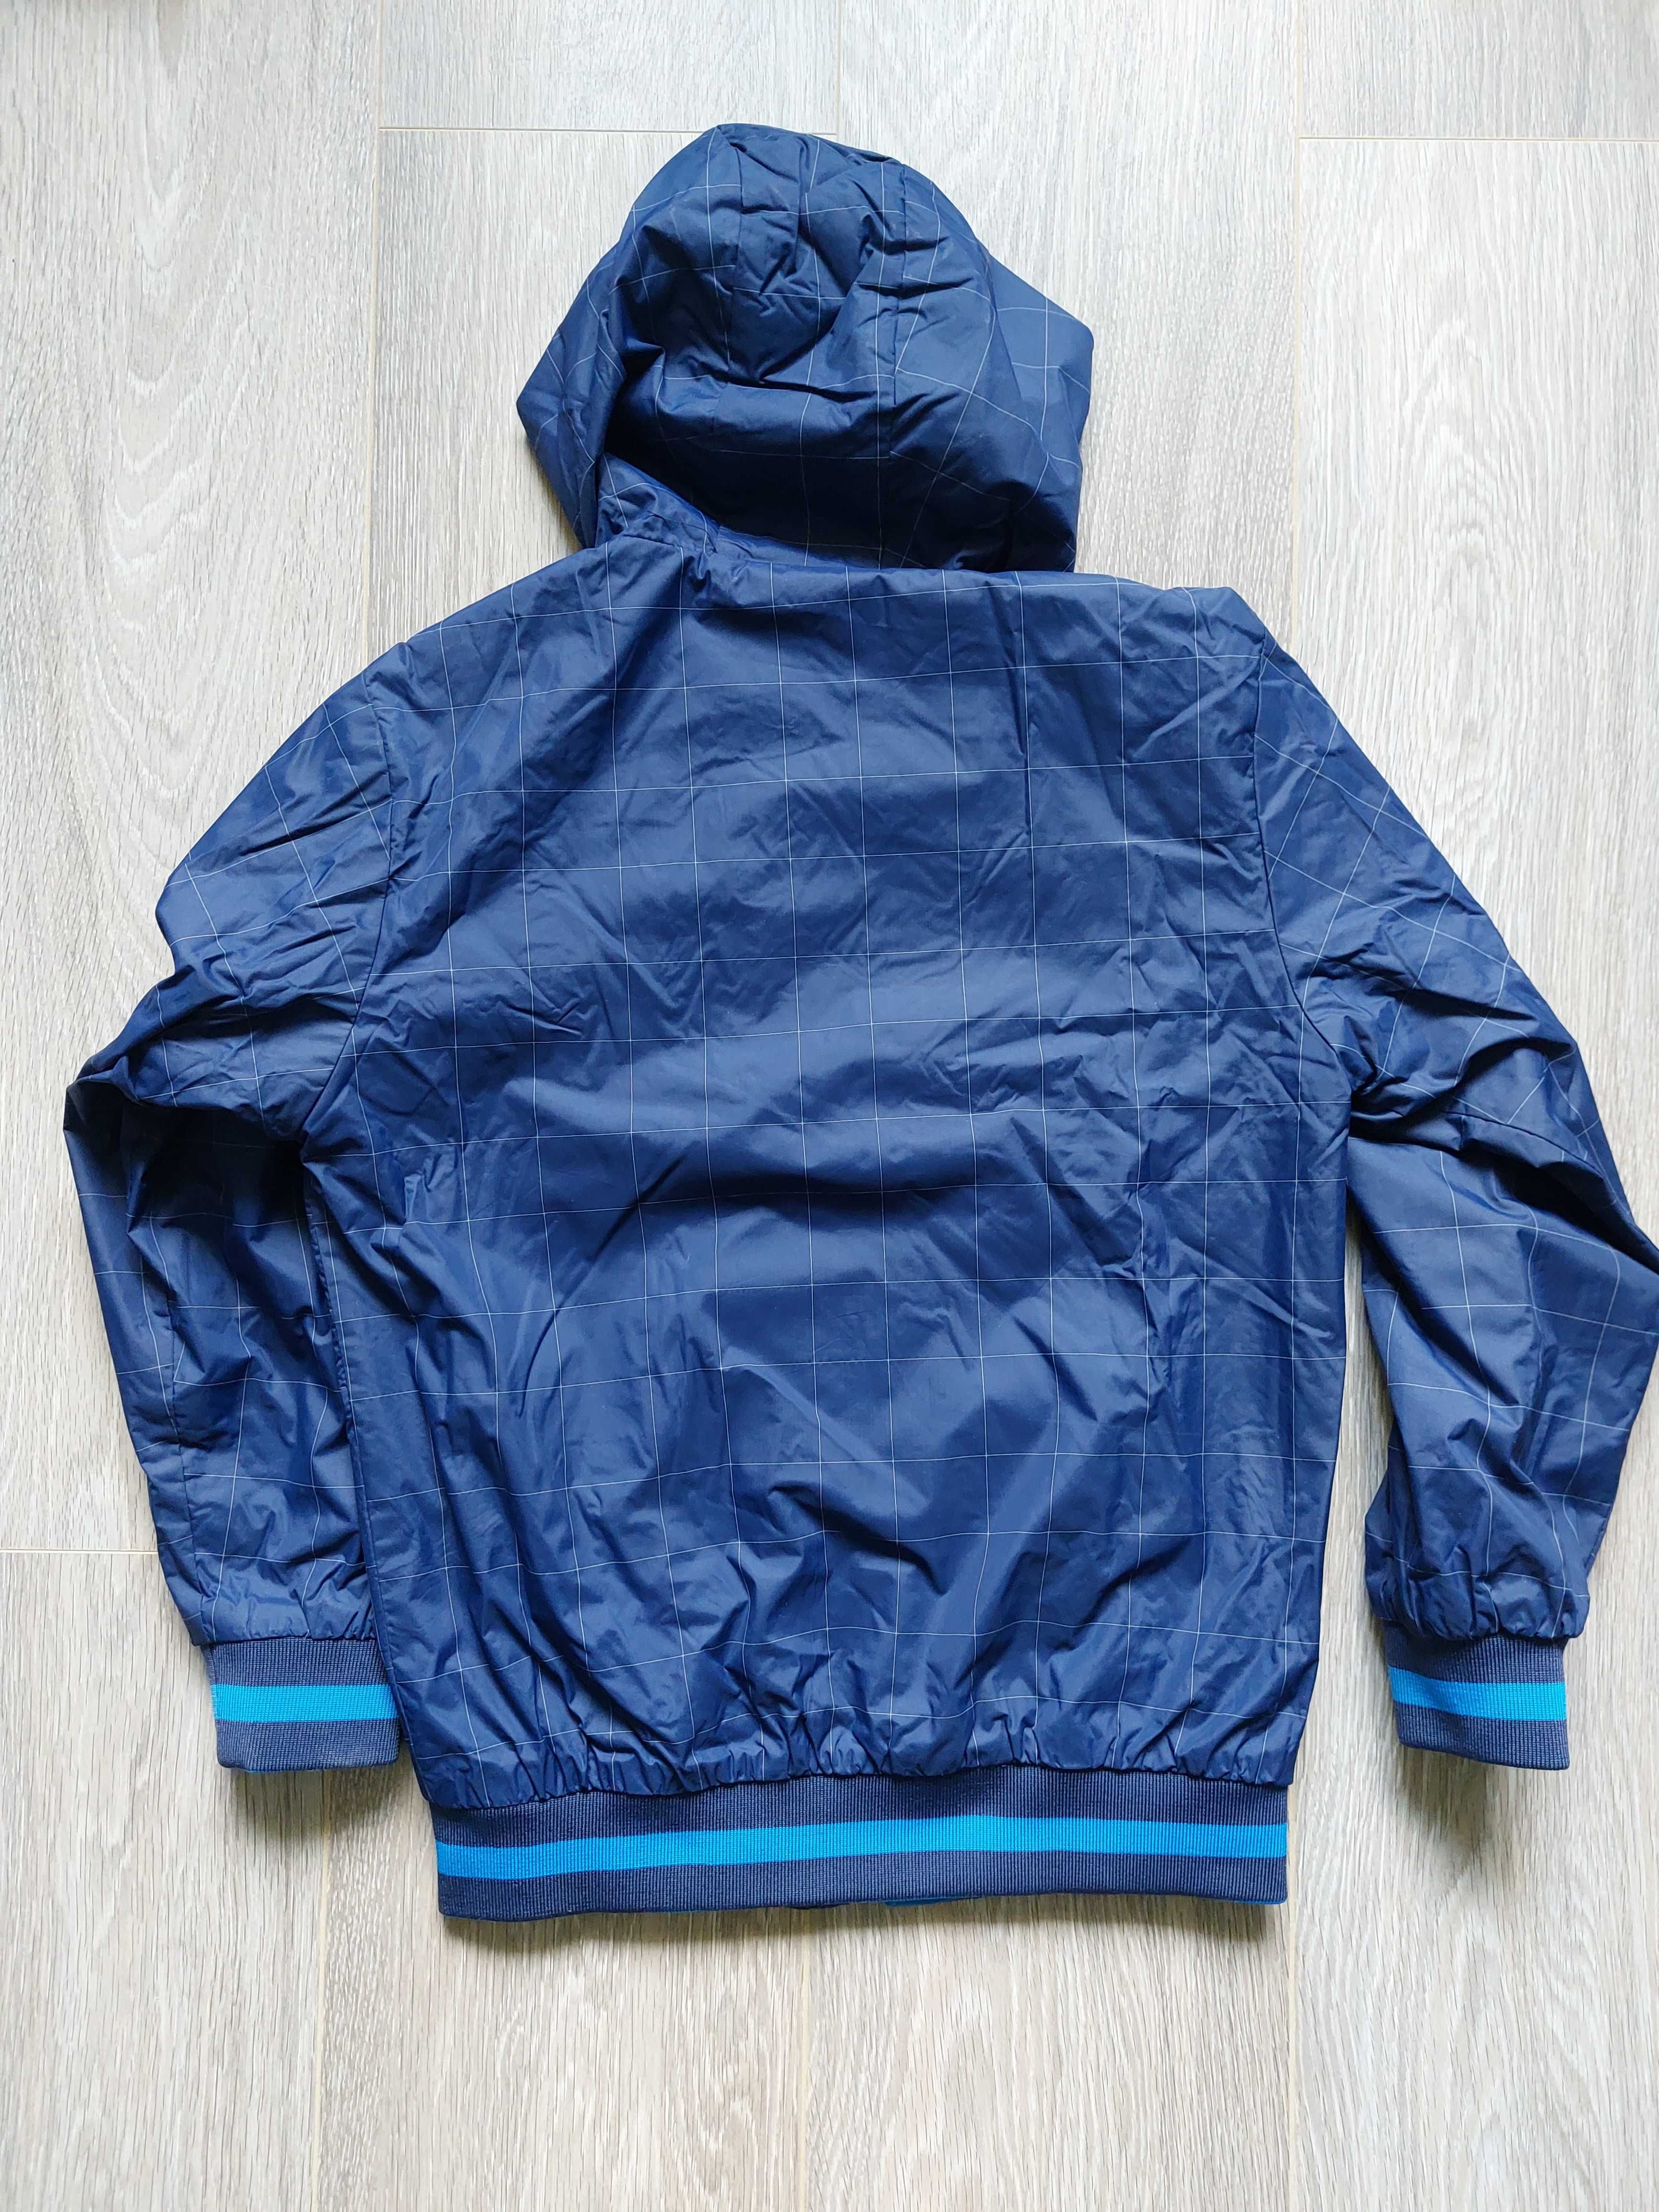 Демісезонна куртка - ветровка двохстороння,  для хлопчика 8-9 років